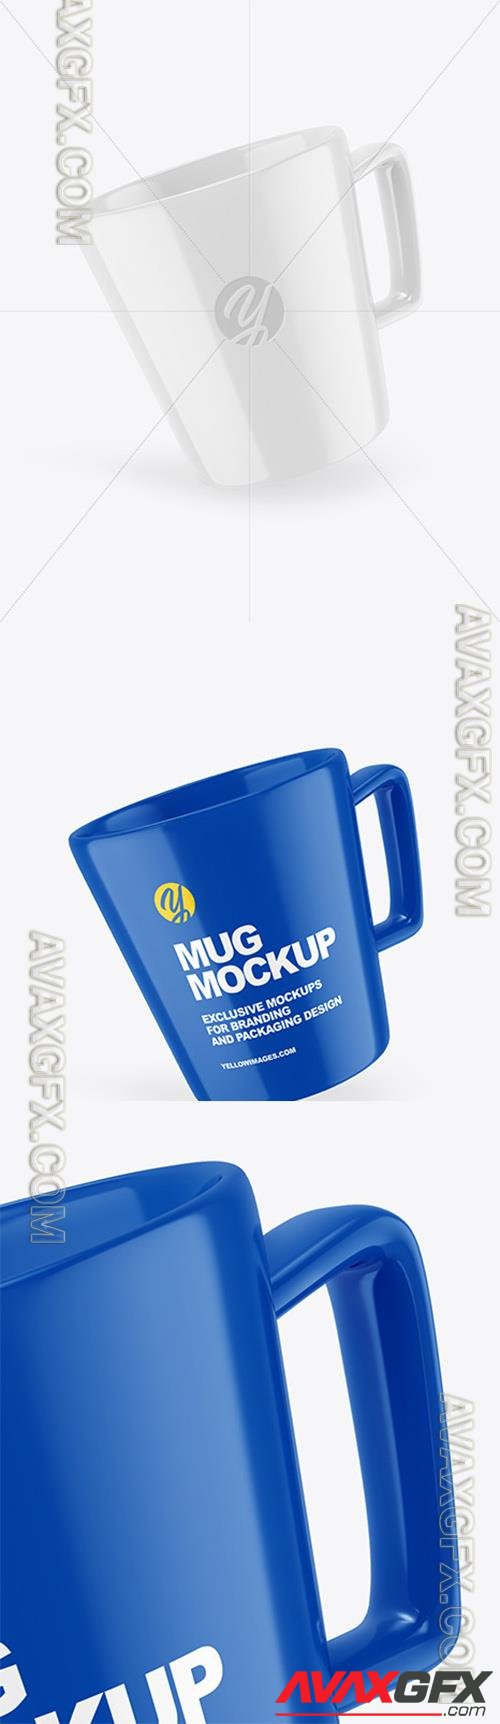 Glossy Mug Mockup 89291 TIF